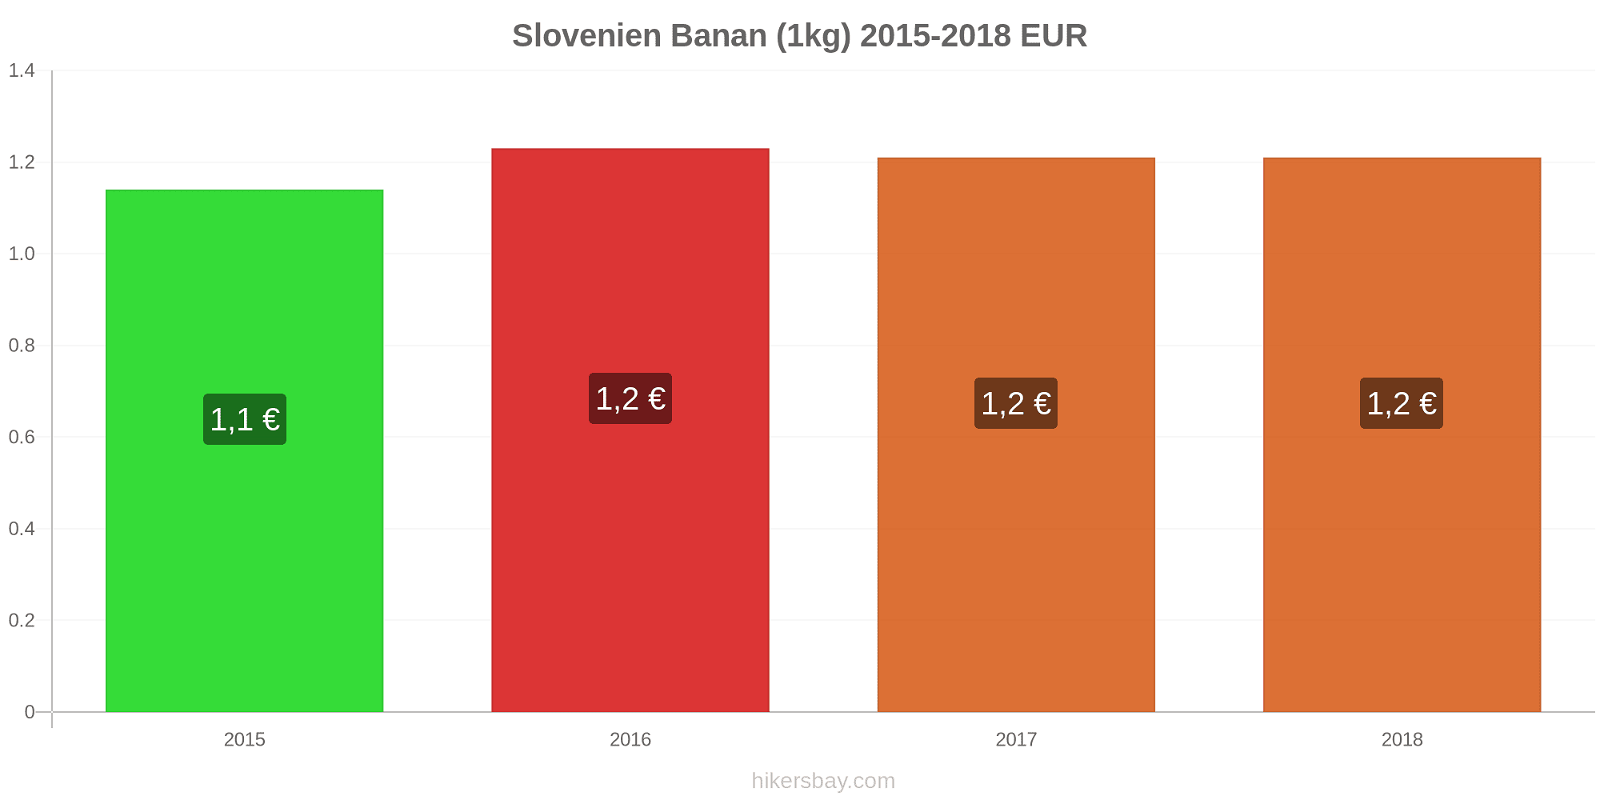 Slovenien prisændringer Bananer (1kg) hikersbay.com